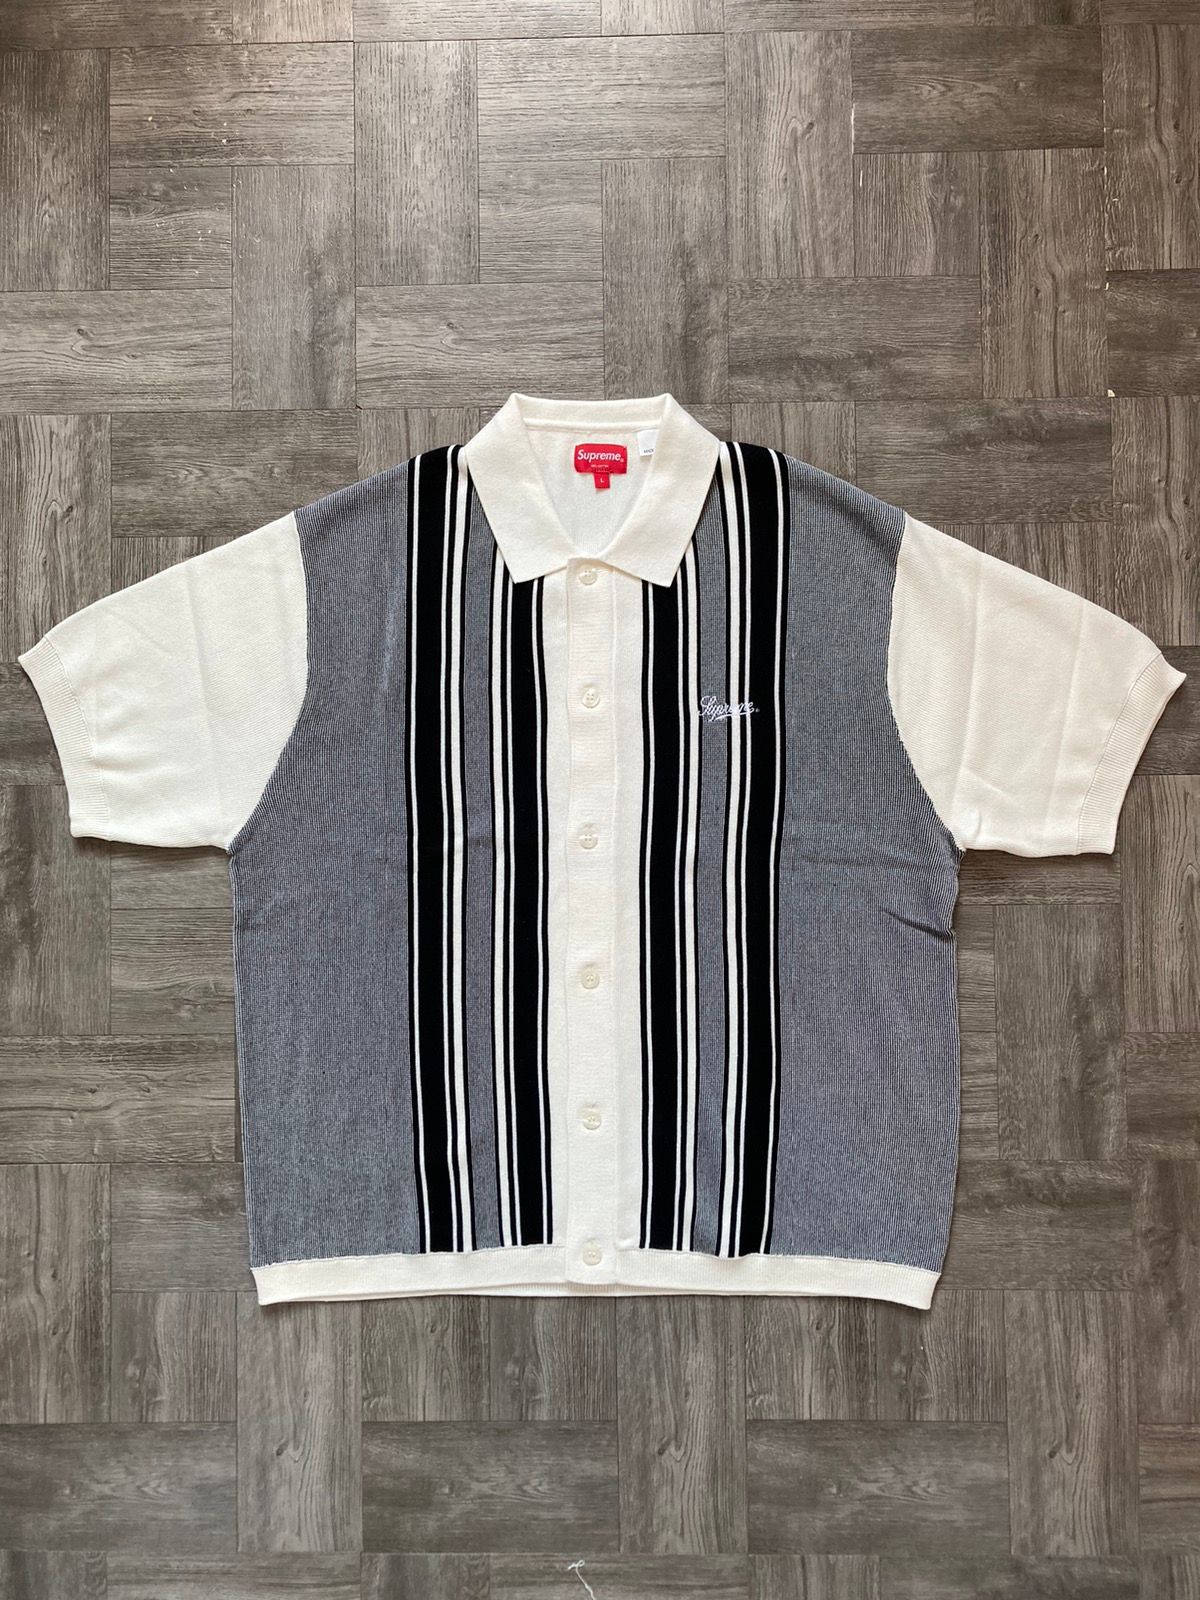 Supreme Supreme Stripe Button Up Polo White Size Large | Grailed